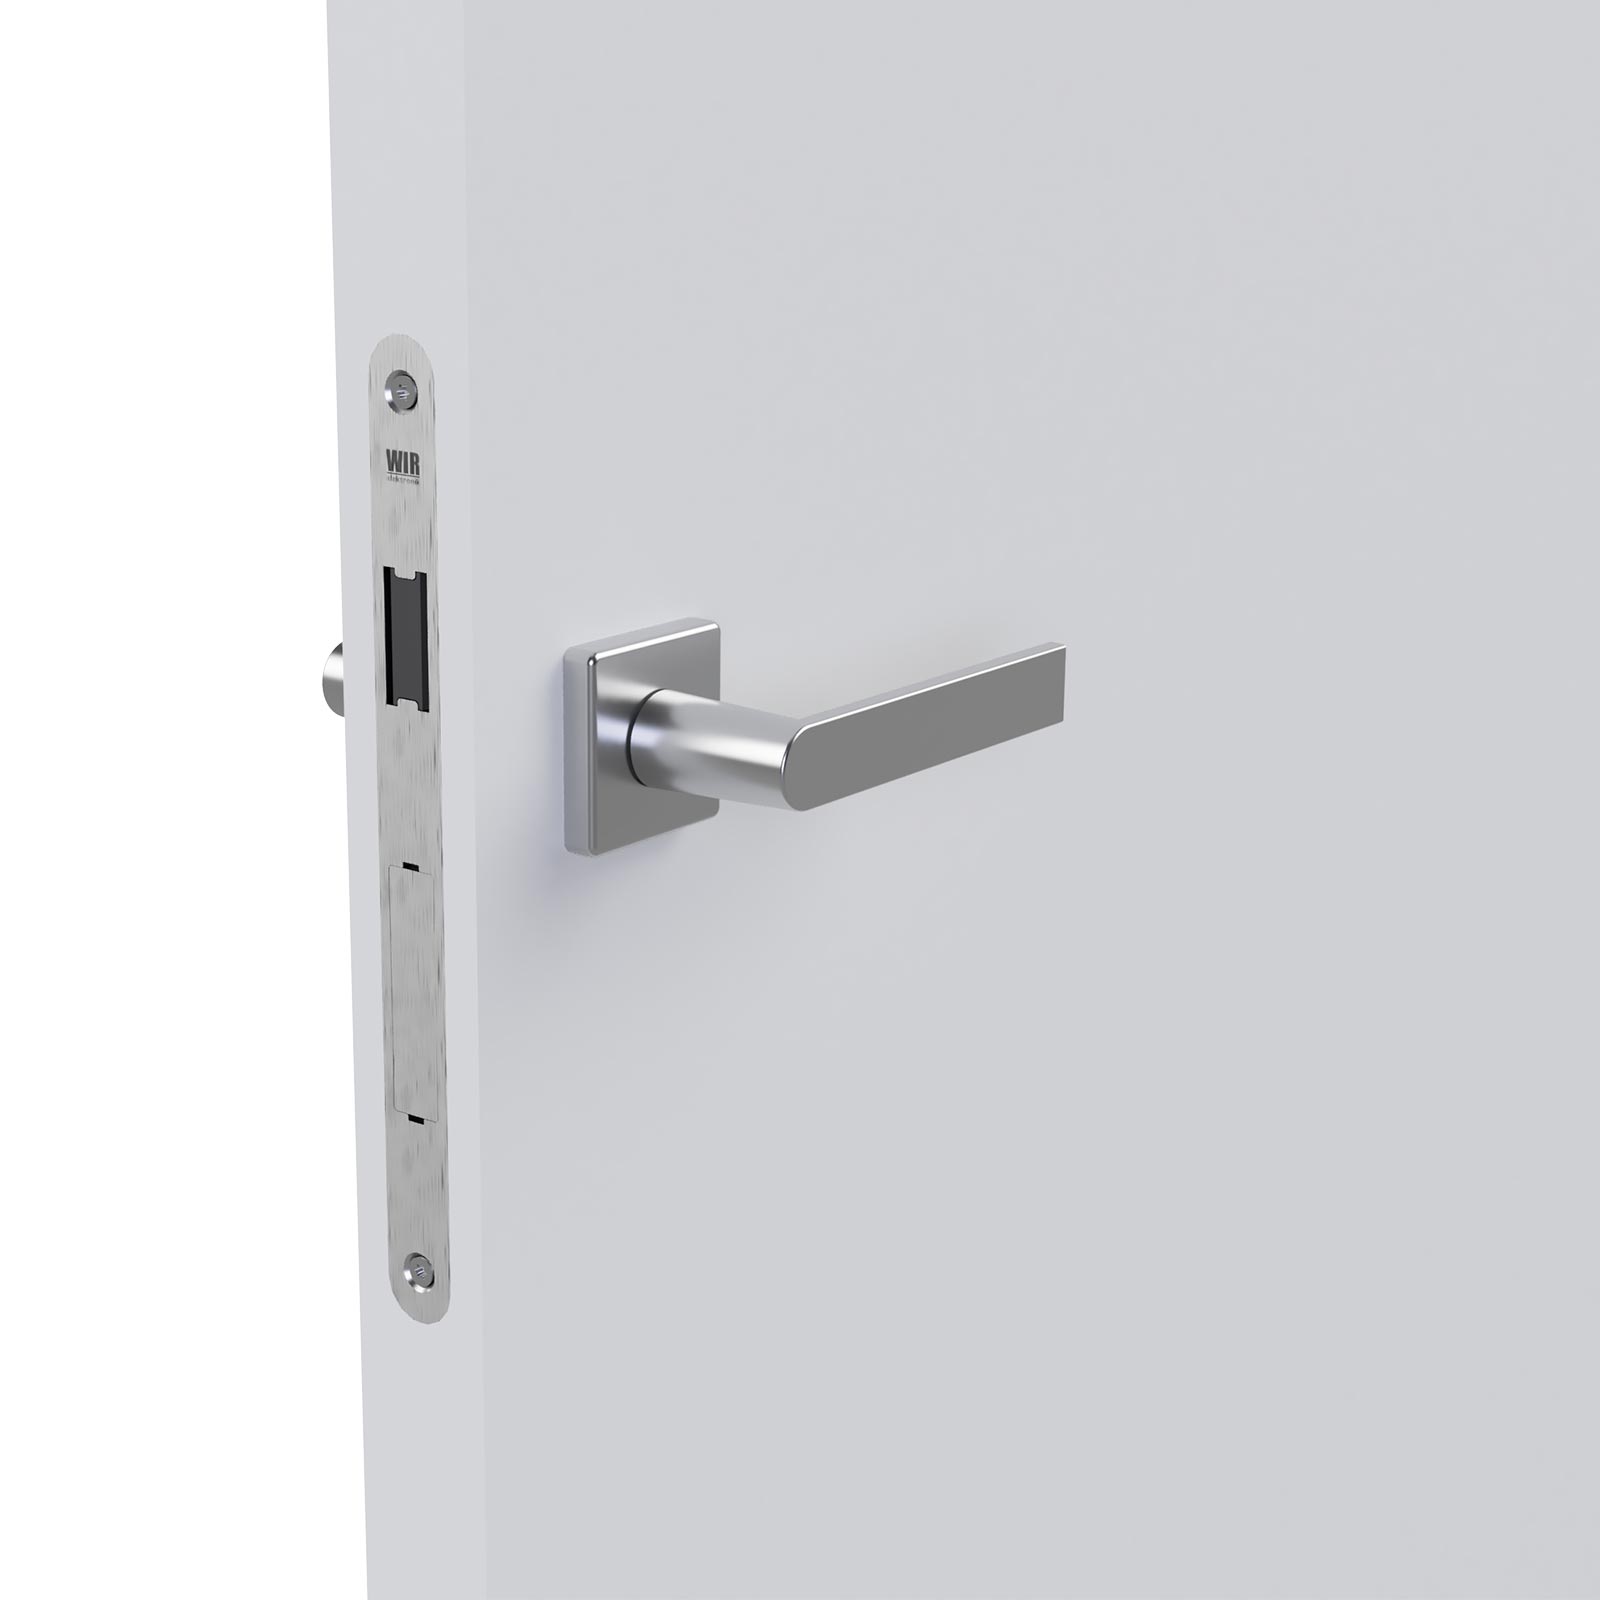 WIR eSCH320 Elektronisches Türschloss für DIN-Rechts/Links-Türen mit Panikfunktion Rechts/Links